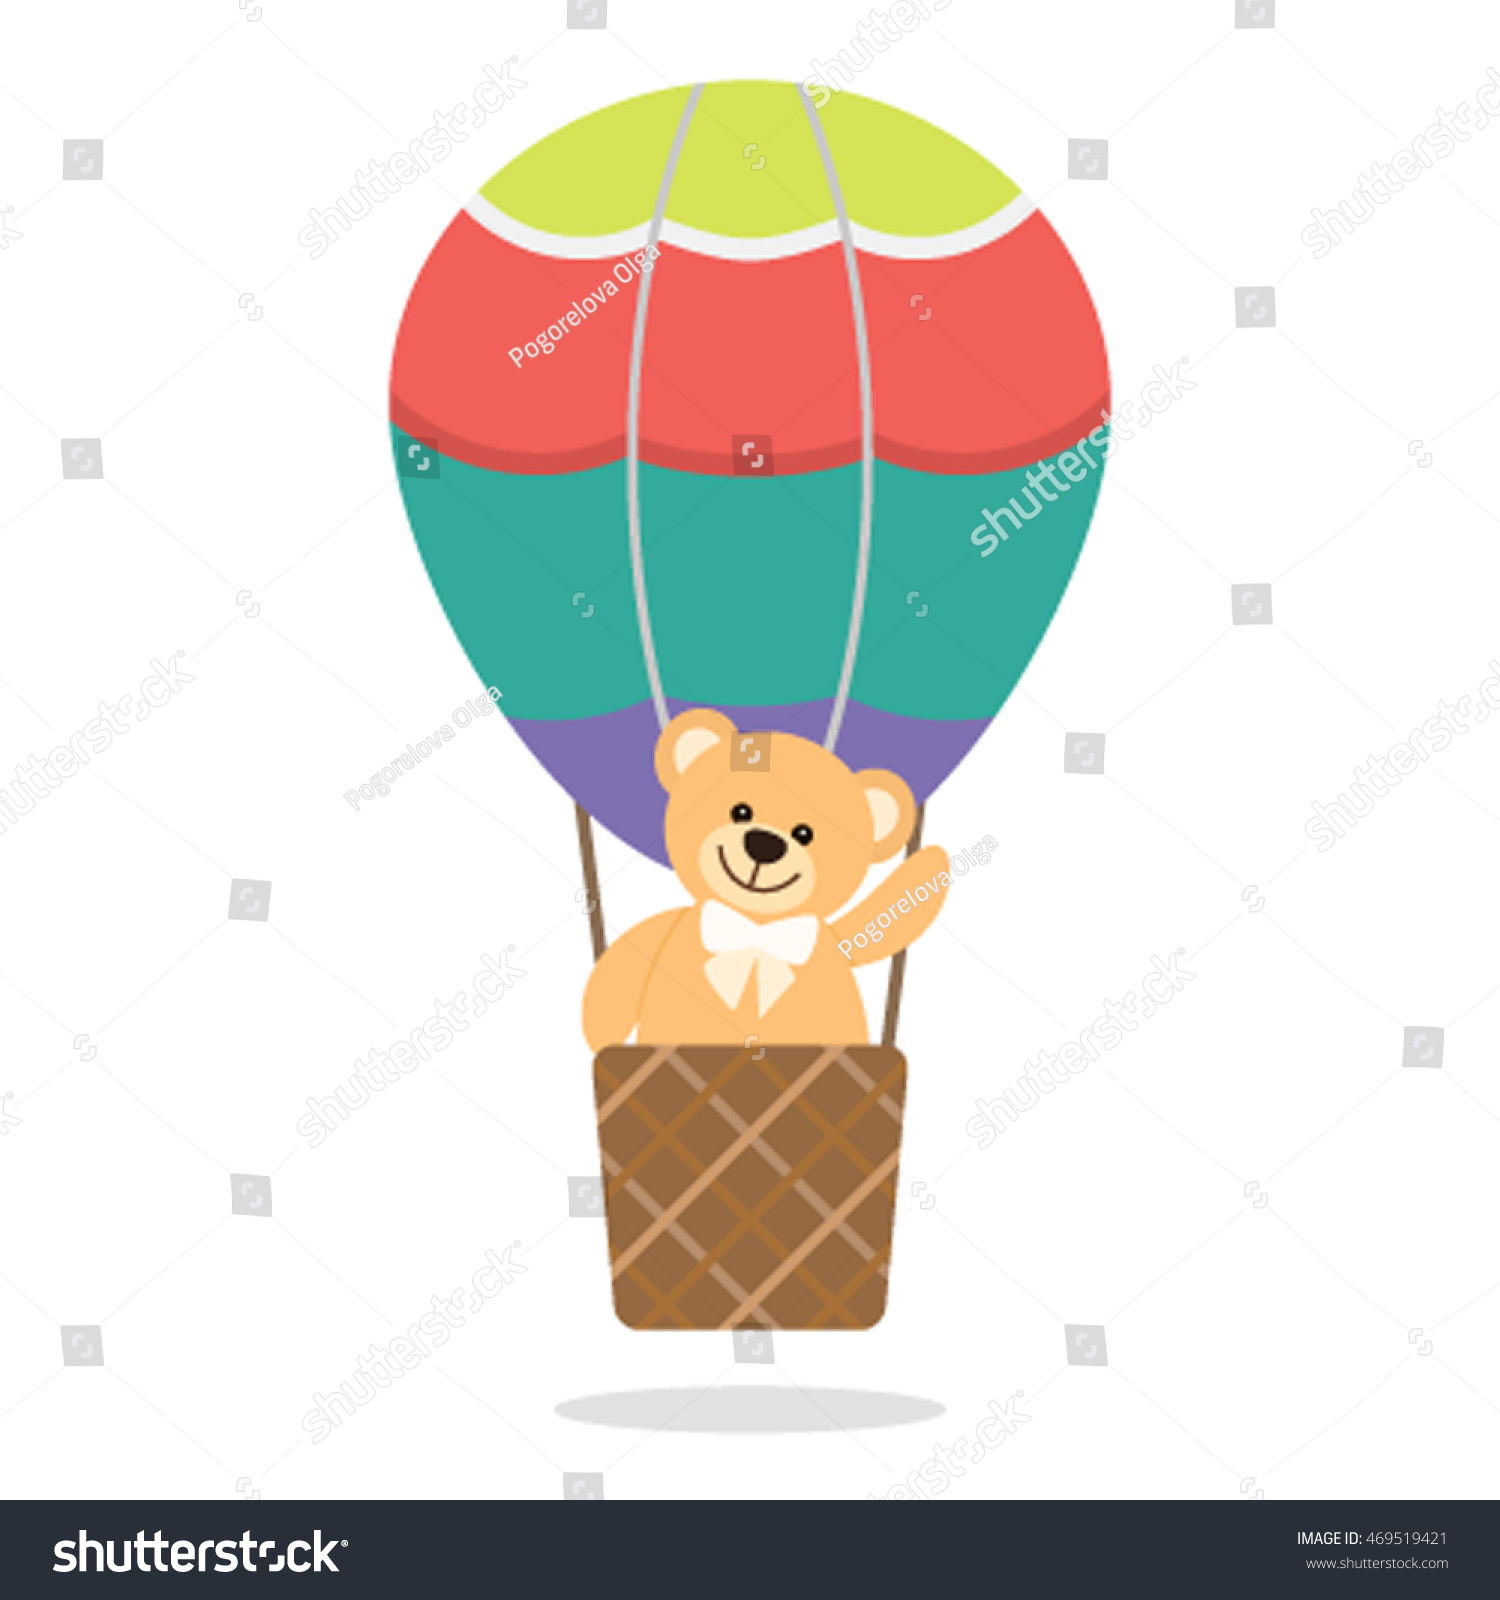 hot air balloon with teddy bear